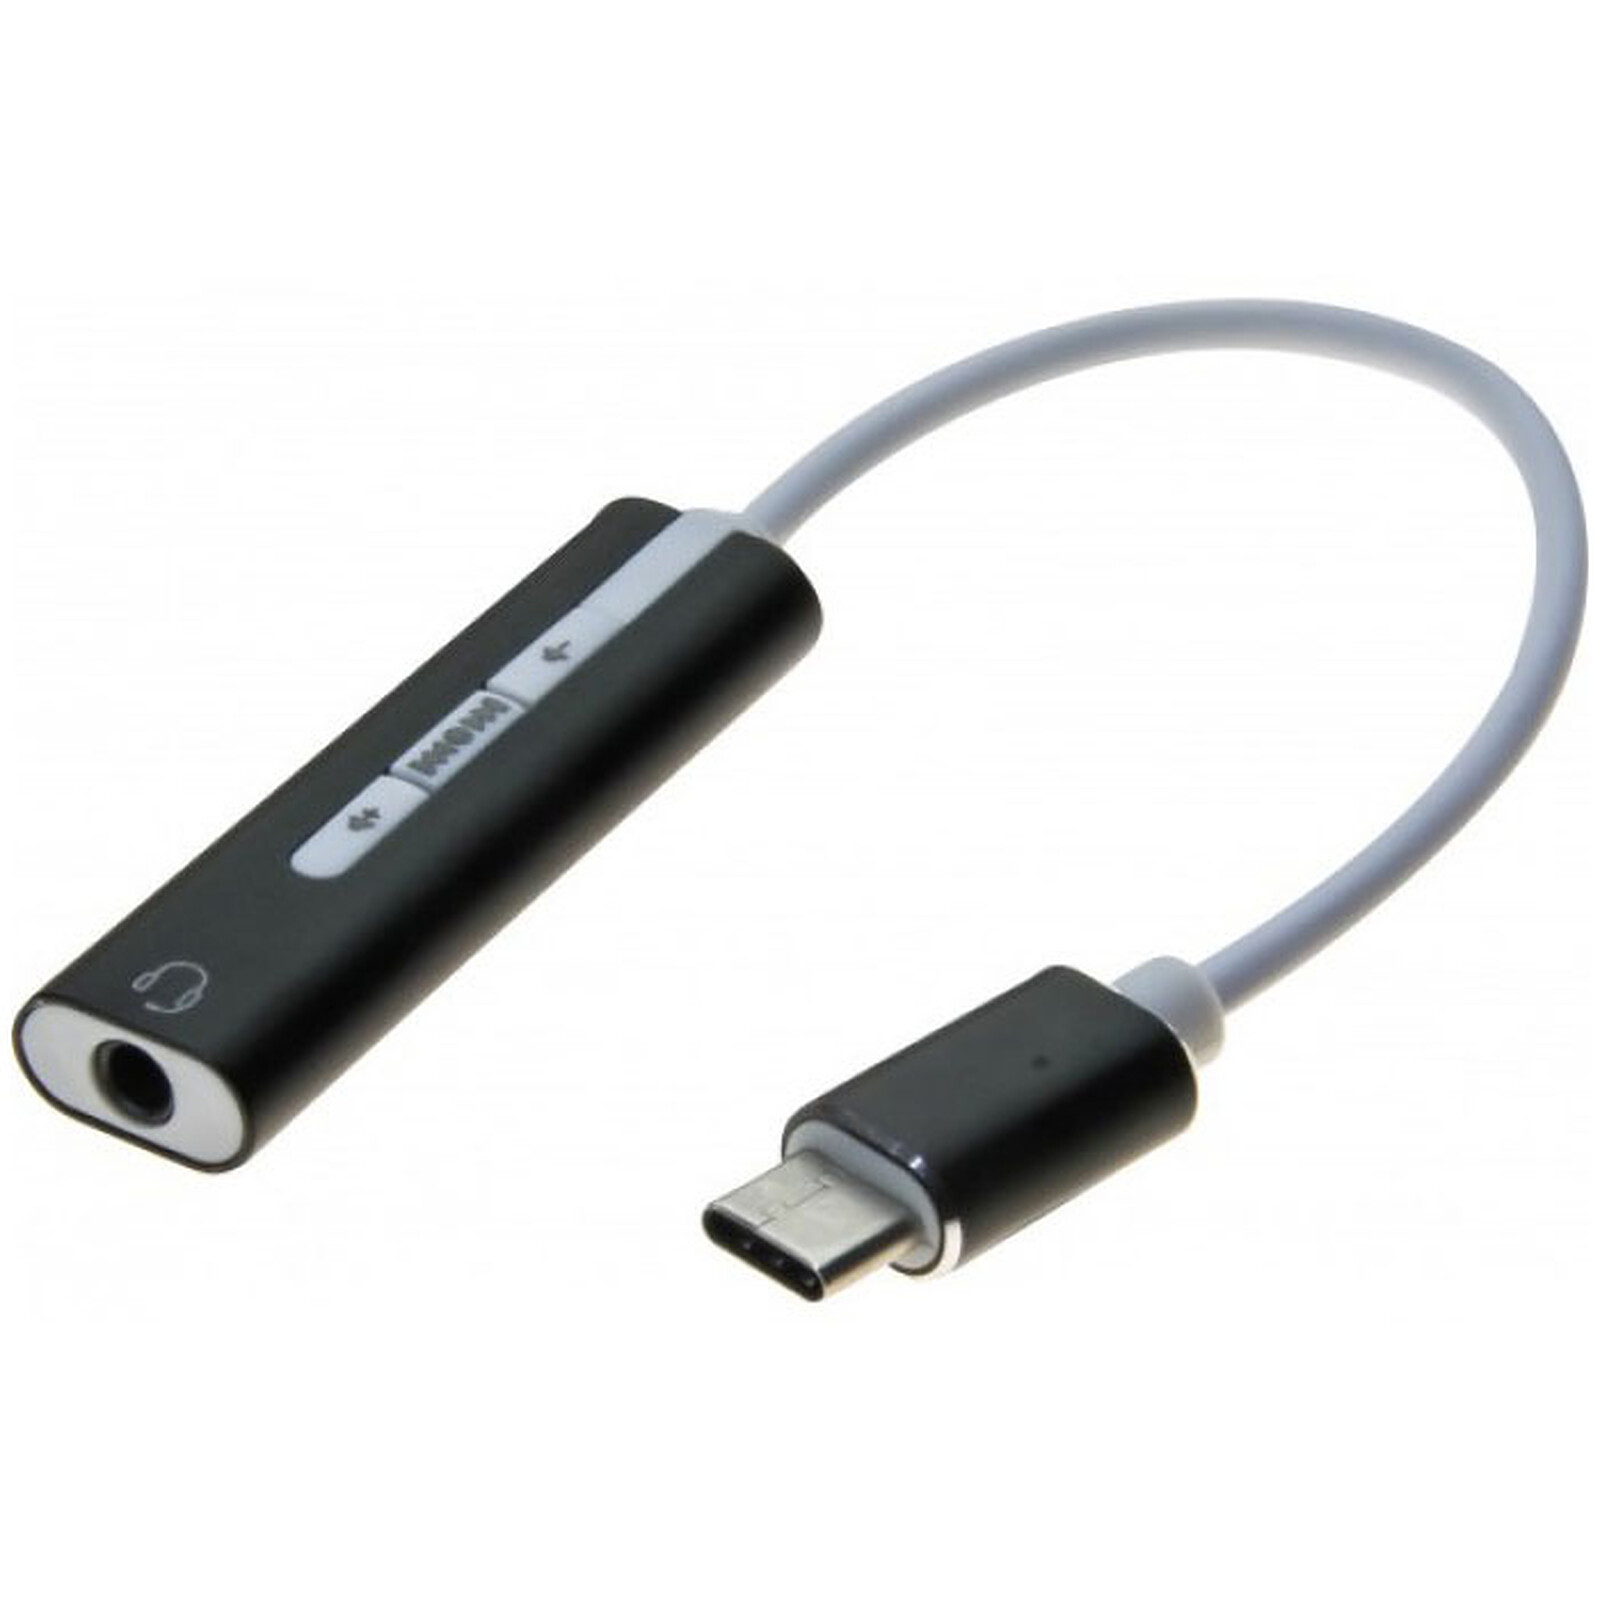 Tarjeta de sonido externa de USB-A a jack de 3,5 mm - soporte de